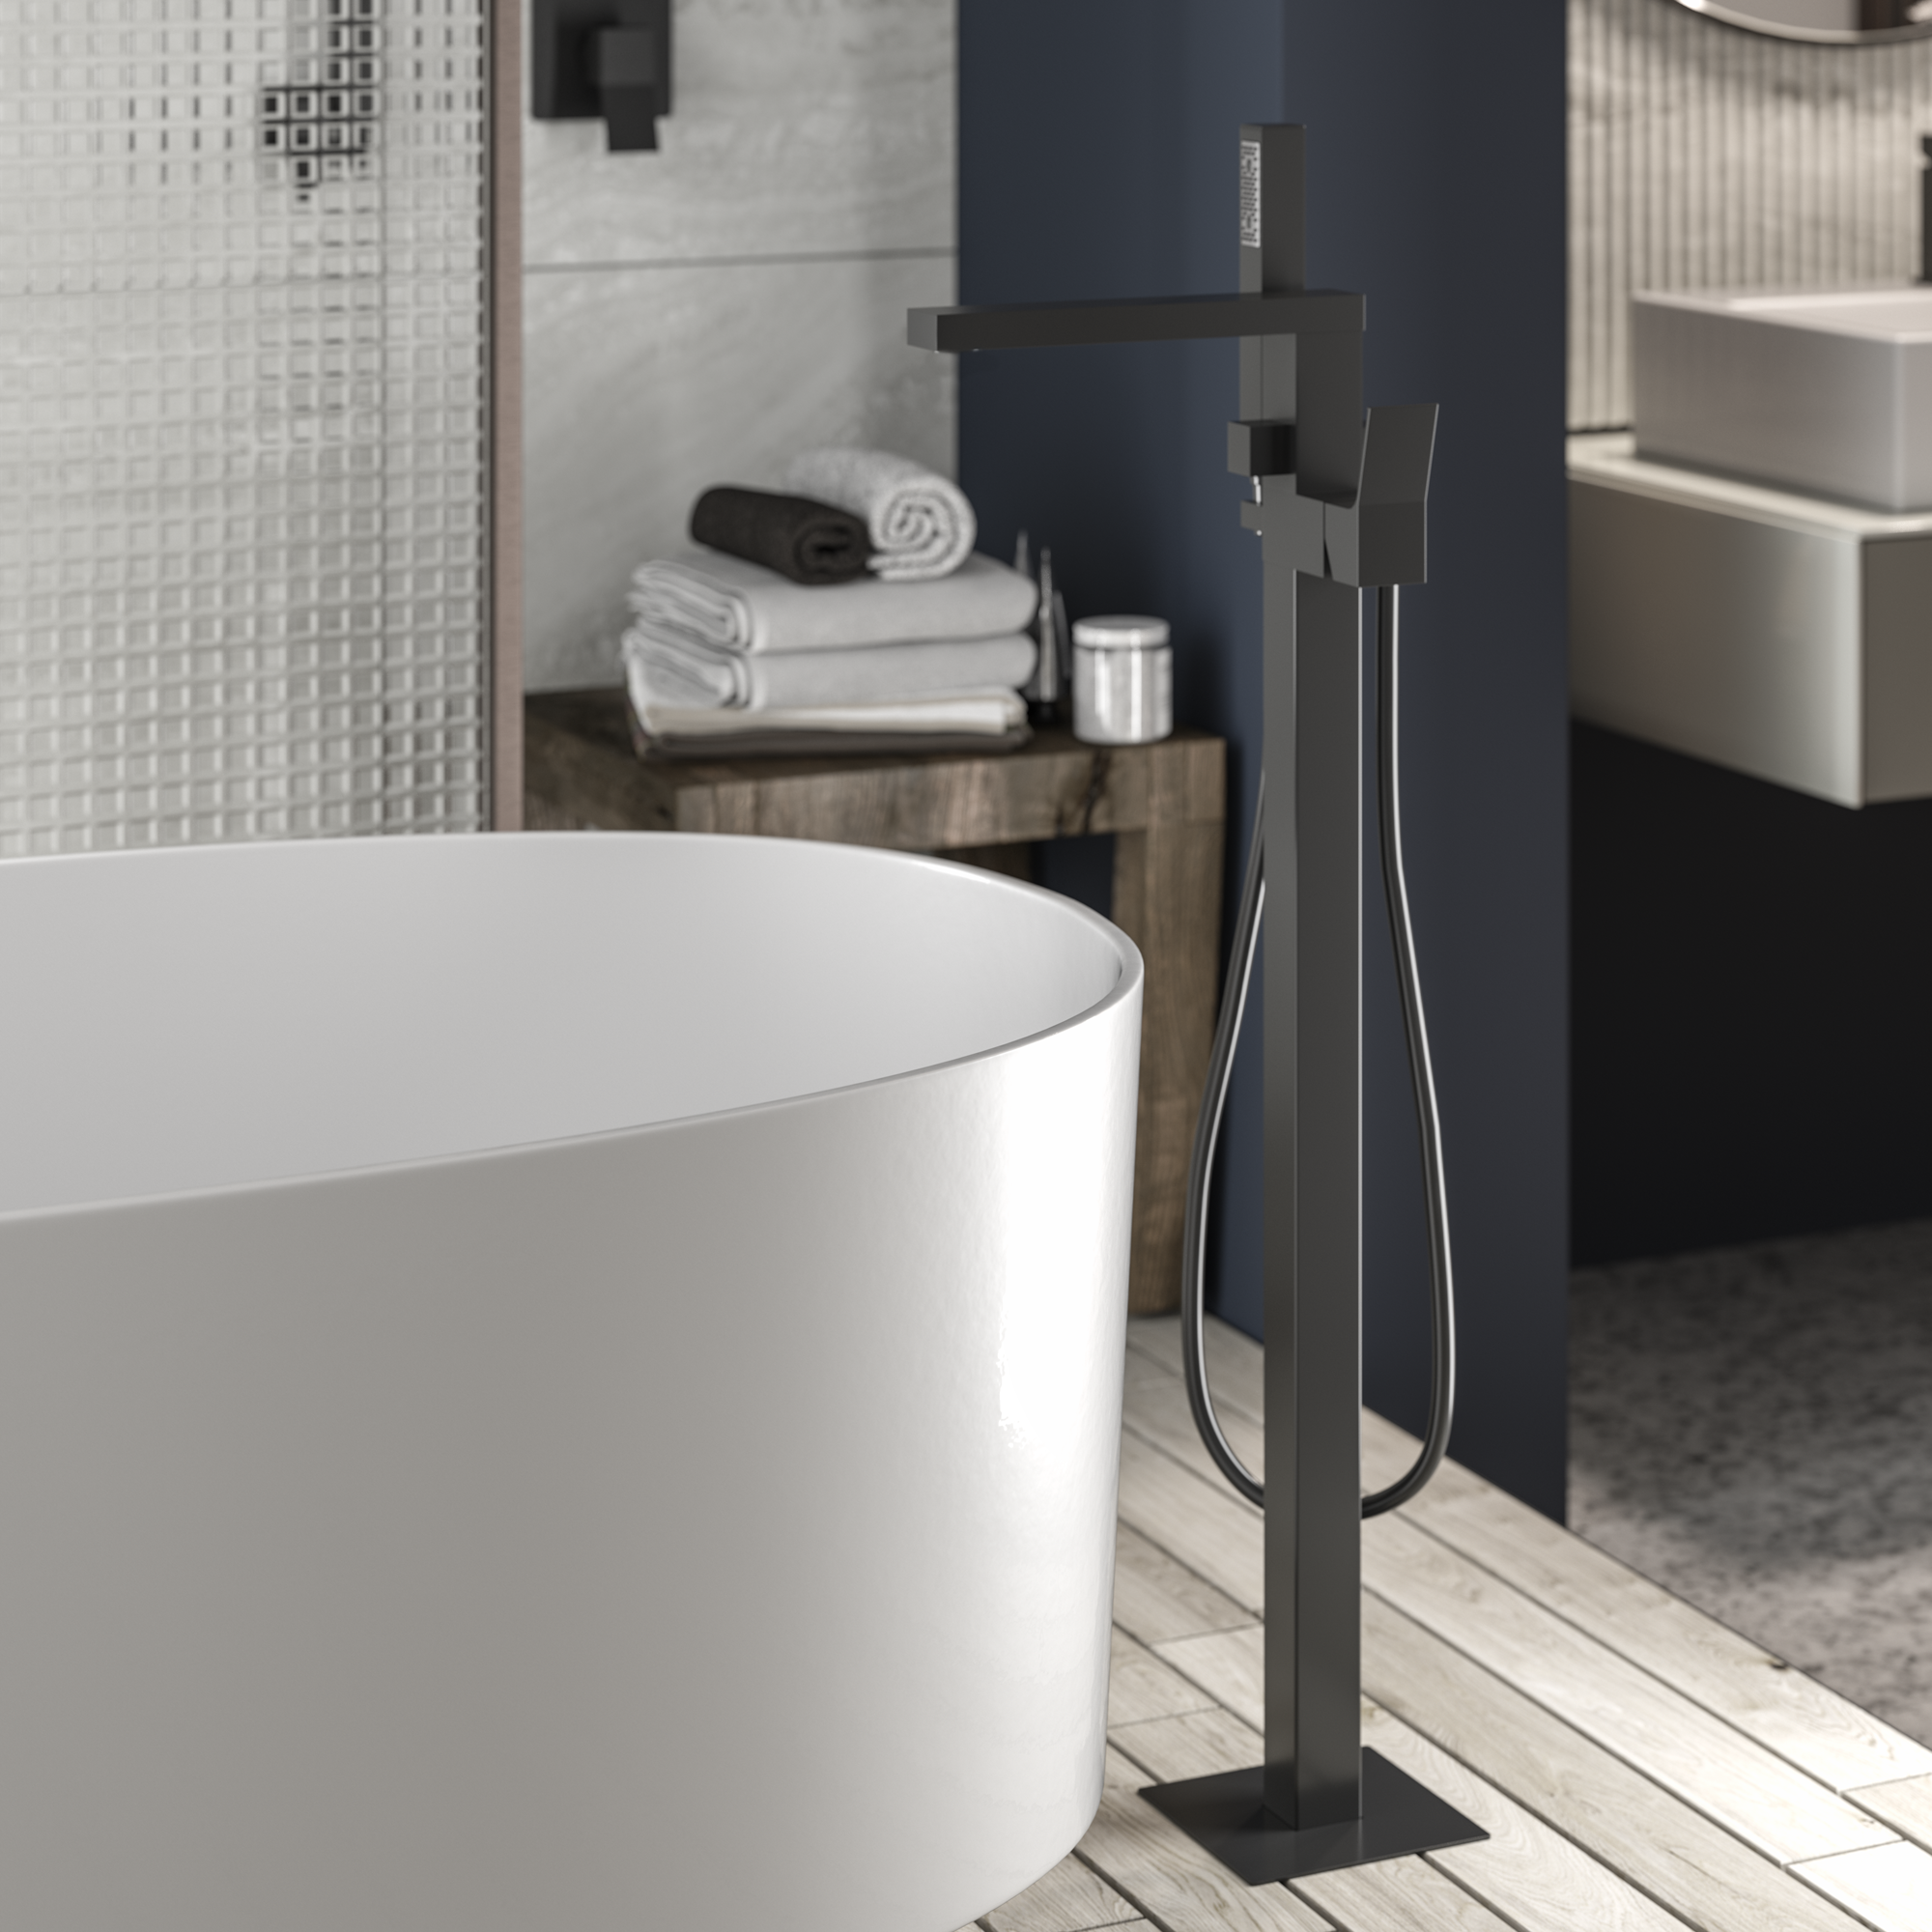 Напольный однорычажный смеситель для ванны BOSSINI AKI Z00771.030 со шлангом 1250 мм и лейкой, цвет Хром